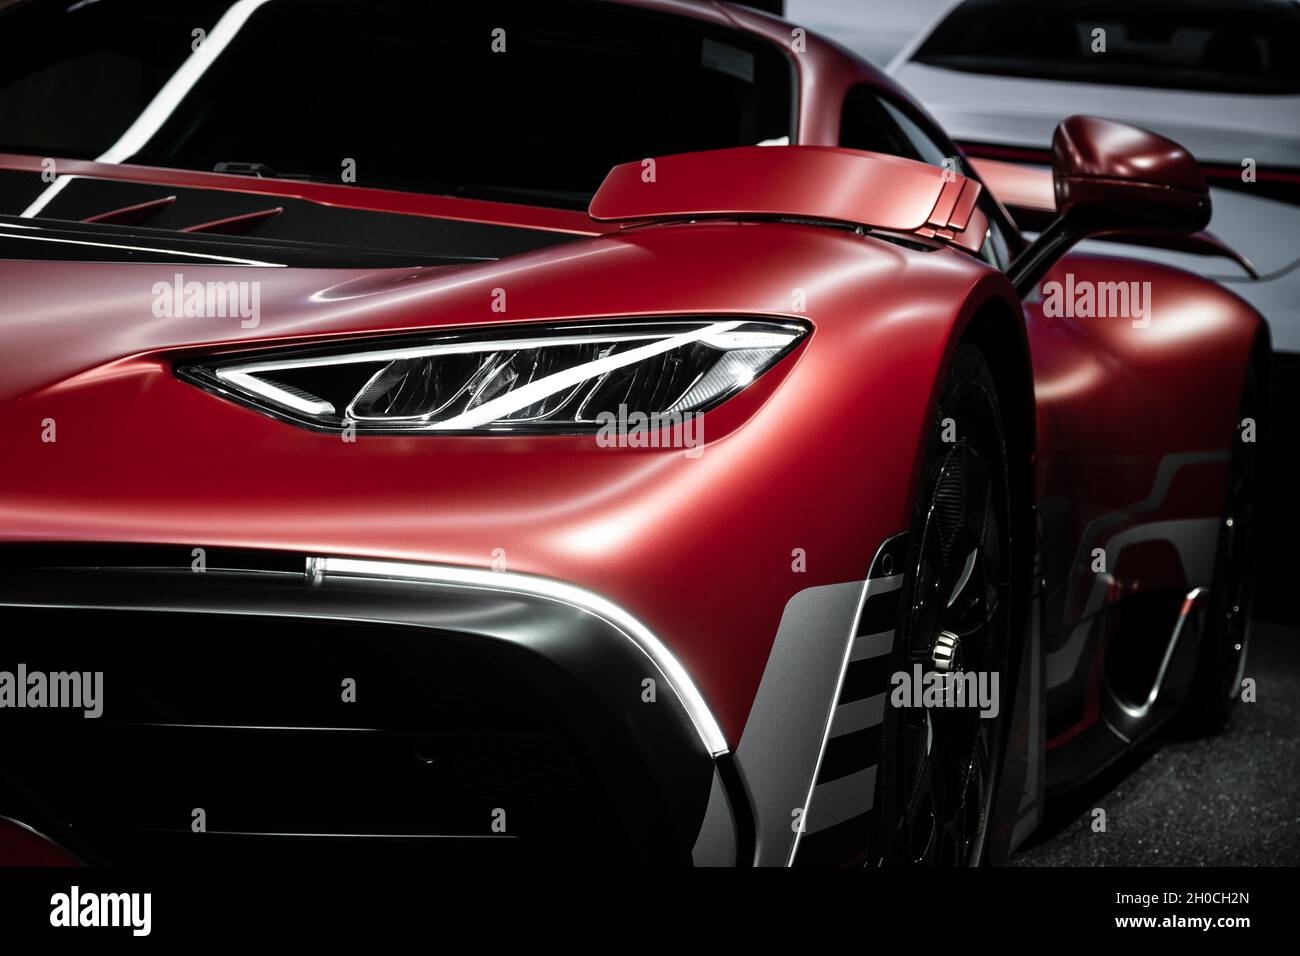 Mercedes-AMG Project One sportiva in mostra al salone IAA Mobility 2021 a Monaco di Baviera, Germania - 6 settembre 2021. Foto Stock